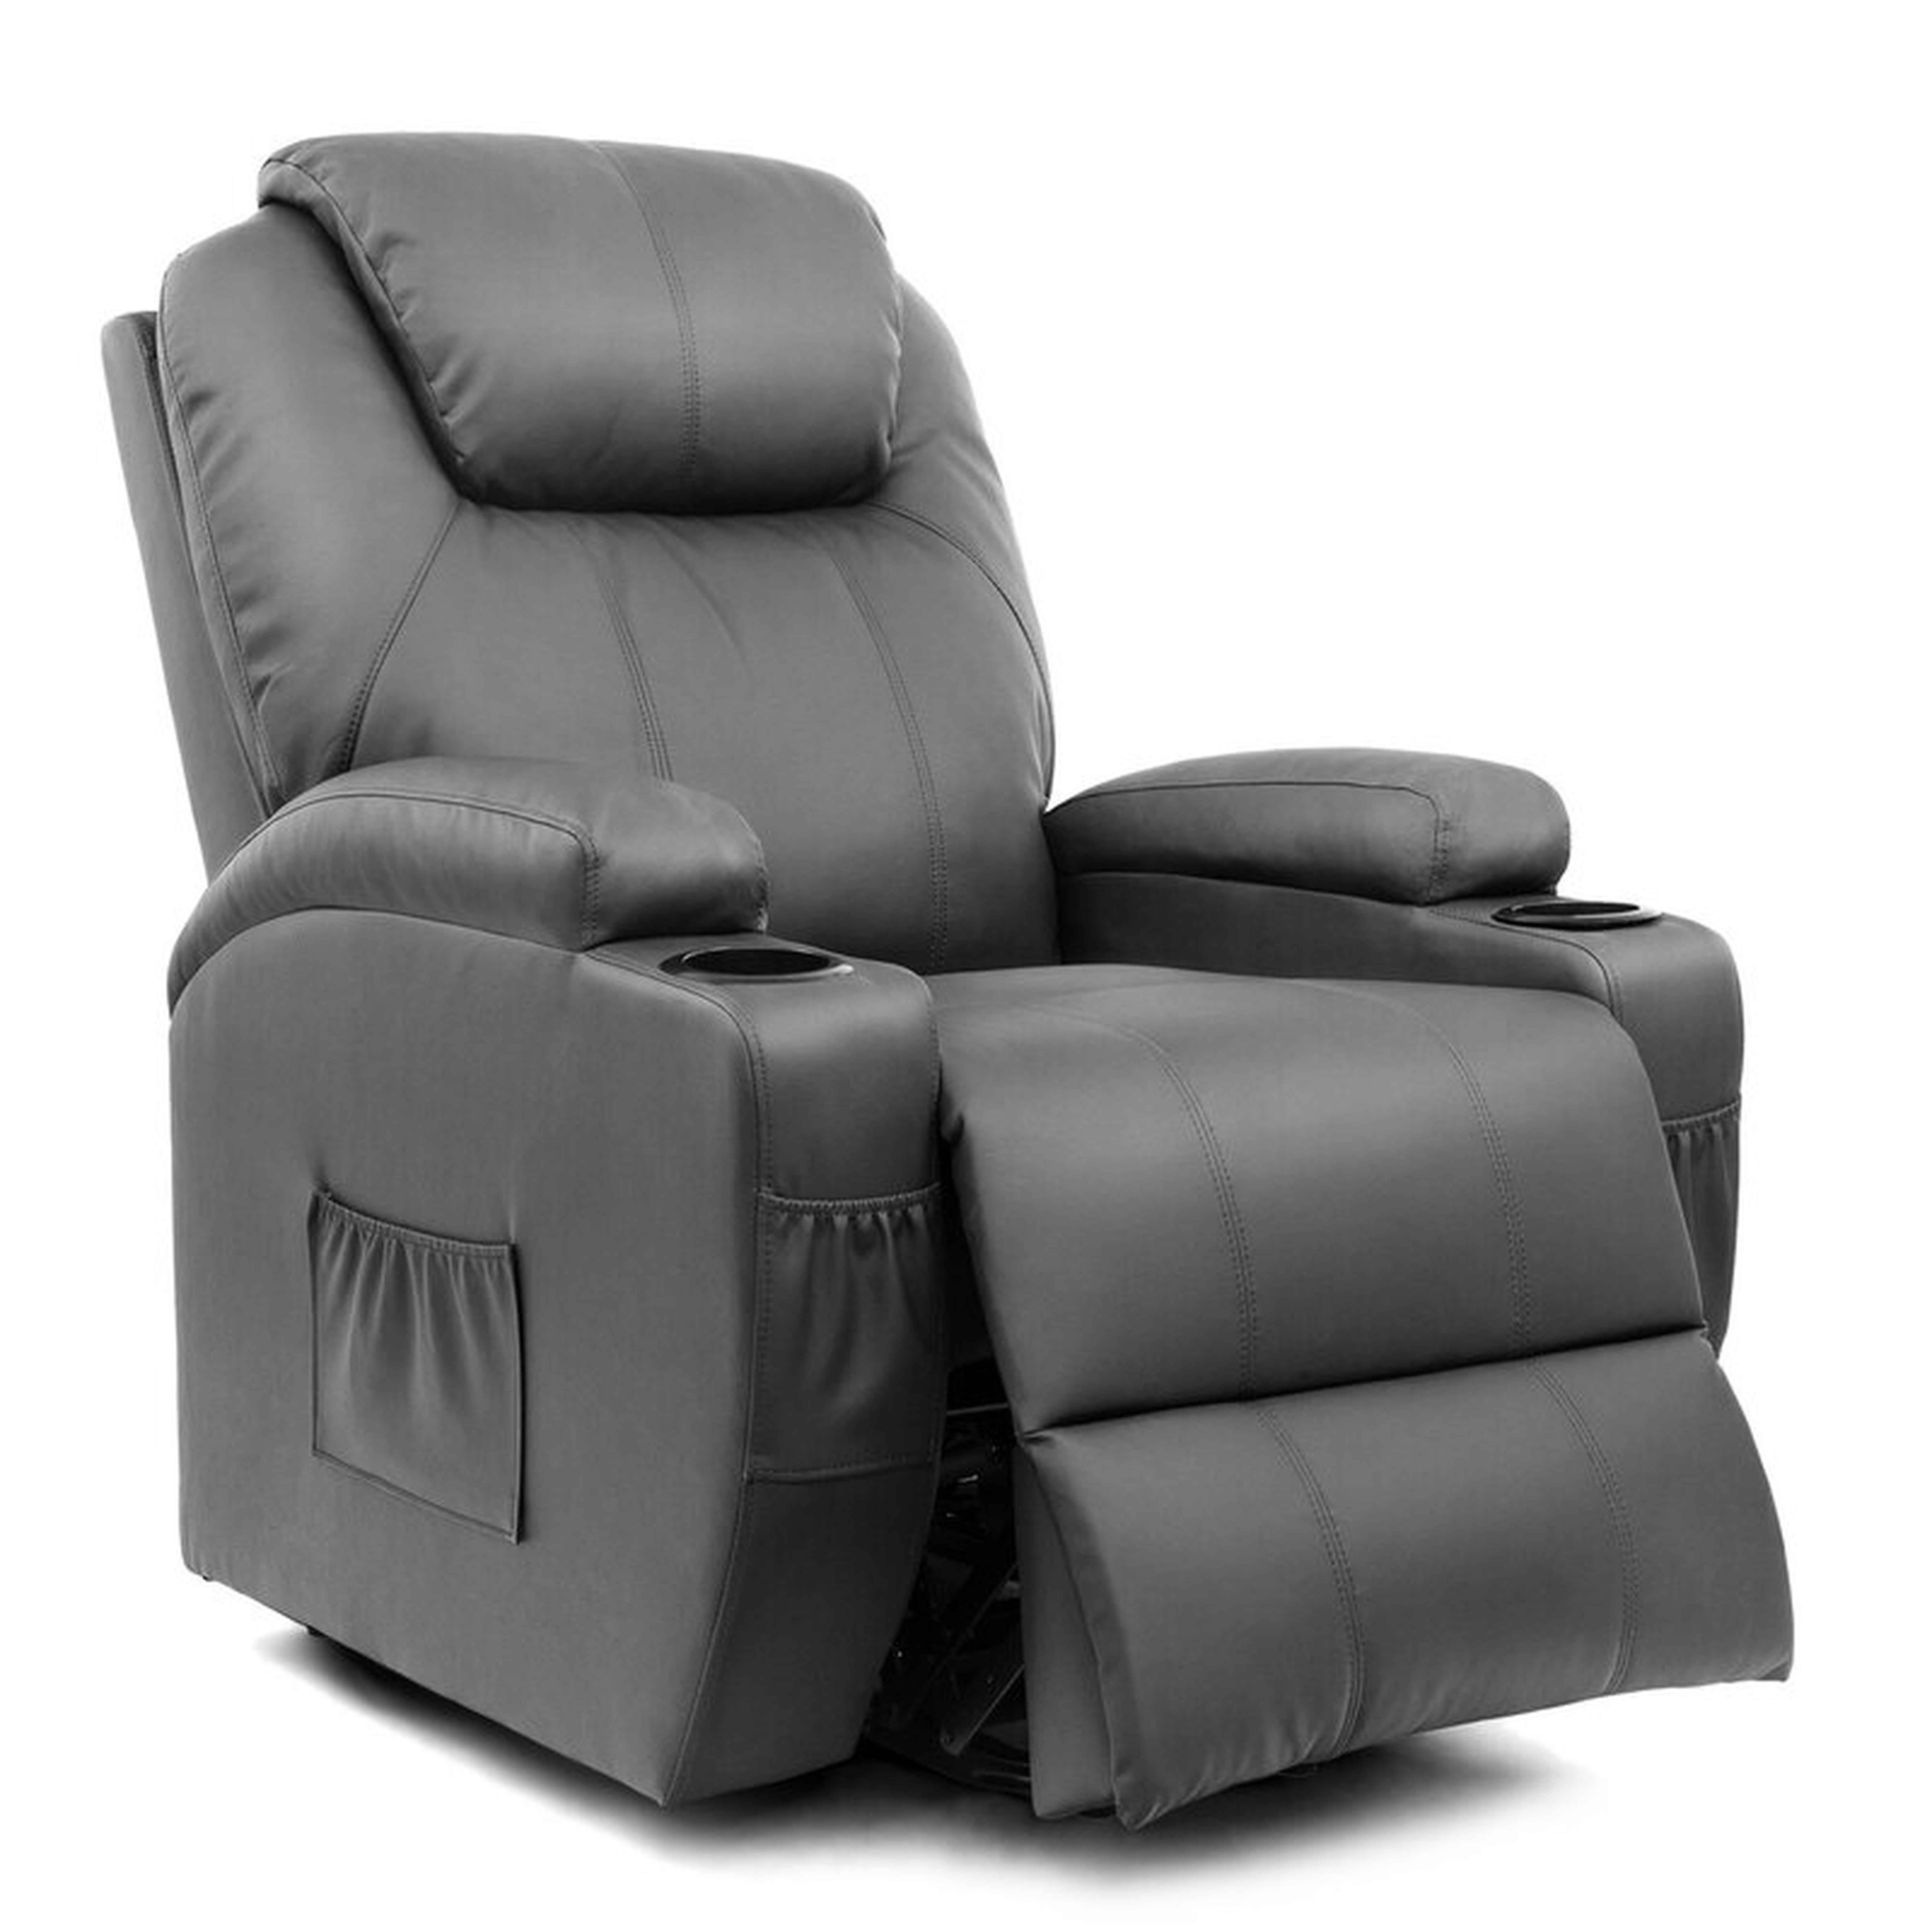 Lift Assist Standard Power Reclining Full Body Massage Chair - Wayfair